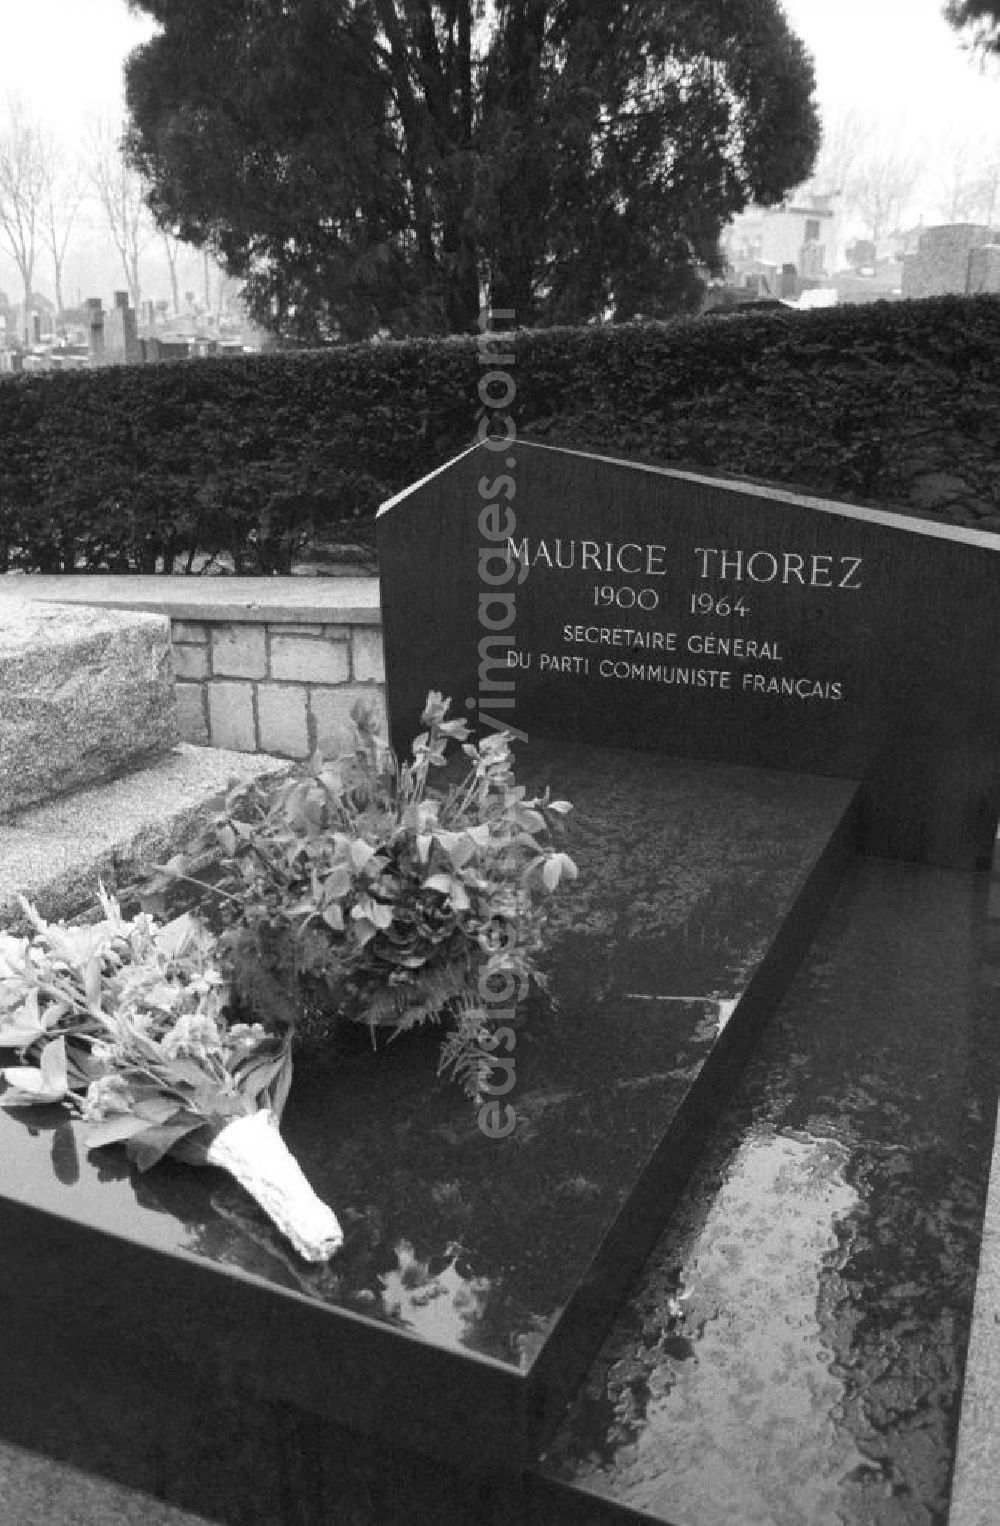 GDR photo archive: Paris - Grab von Maurice Thorez (Generalsekretär der PCF bzw. KPF, Kommunistische Partei Frankreich) auf dem Friedhof Pere Lachaise in Frankreich-Paris. Foto anläßlich des Besuchs von Erich Honecker, Staatsratspräsident DDR.